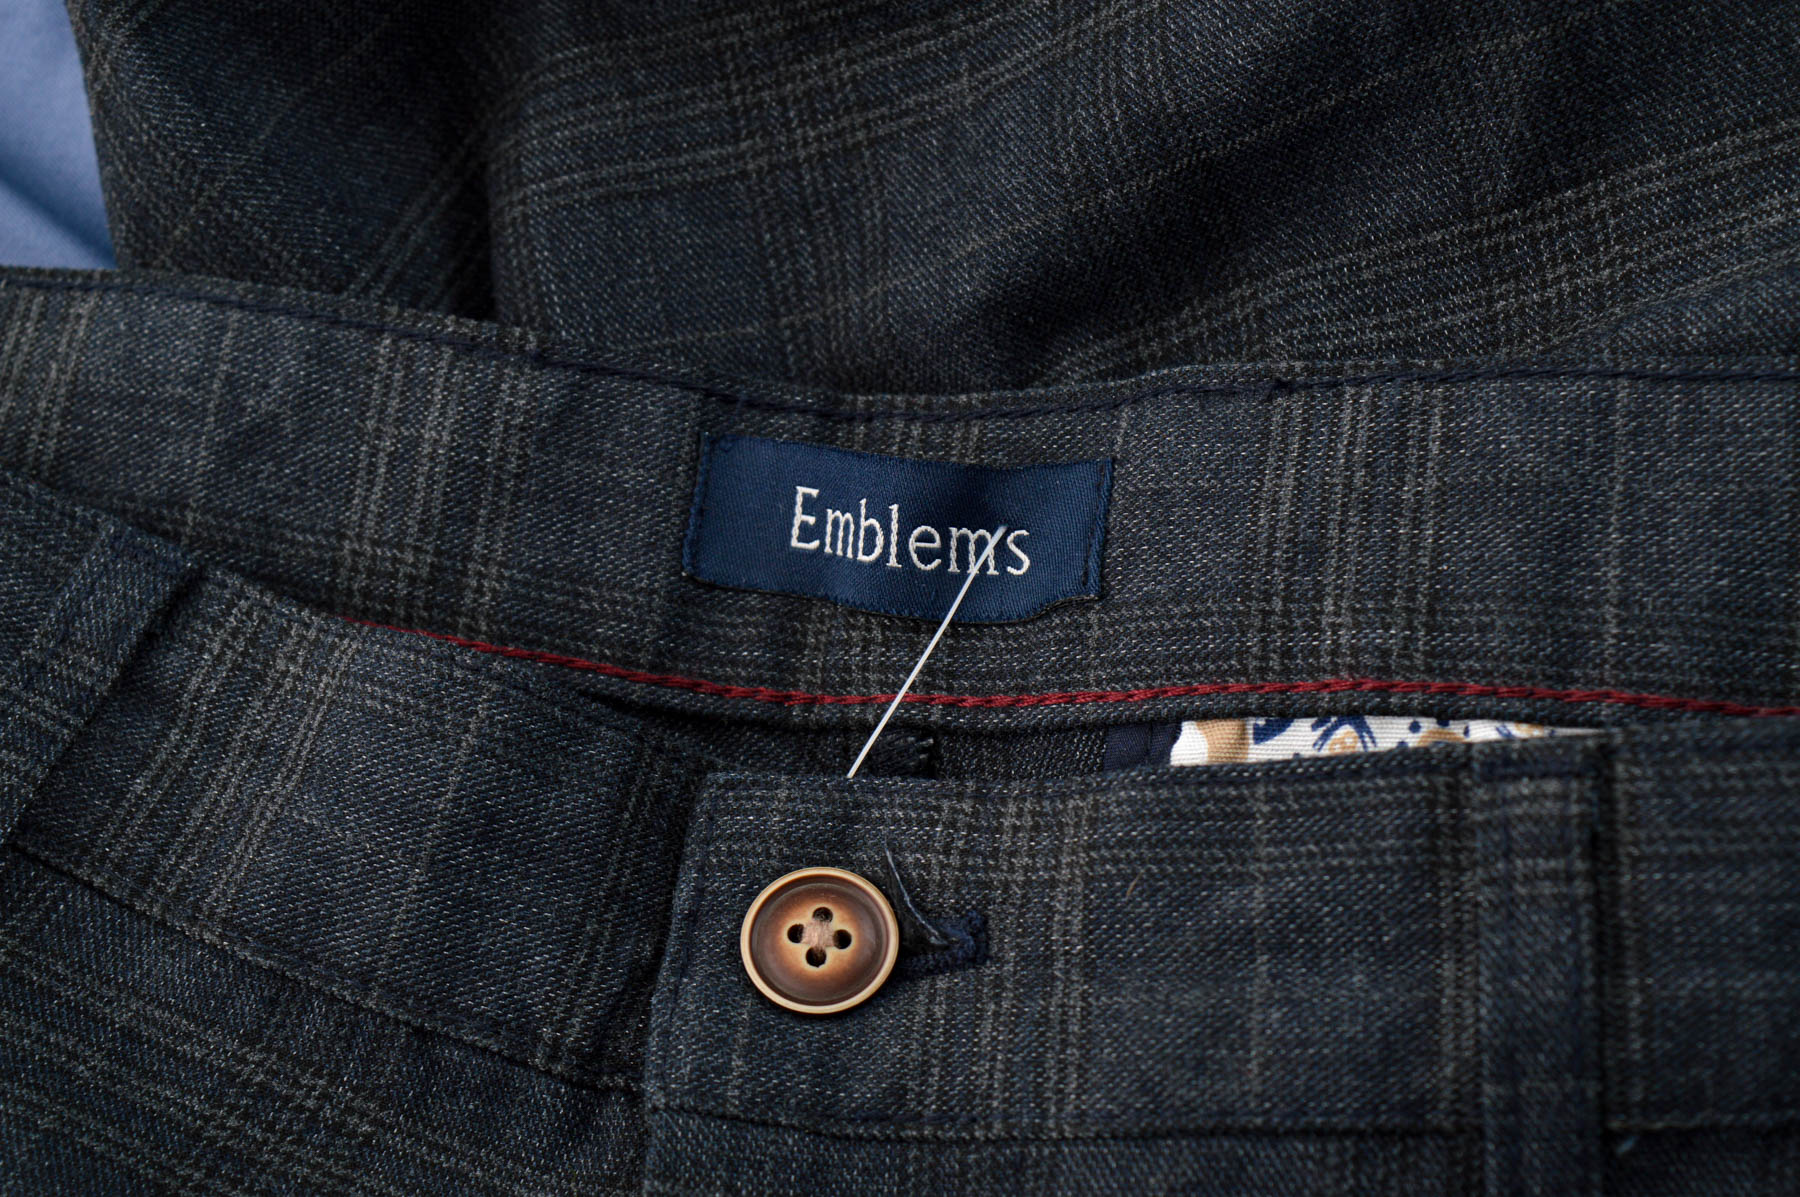 Men's trousers - Emblems - 2